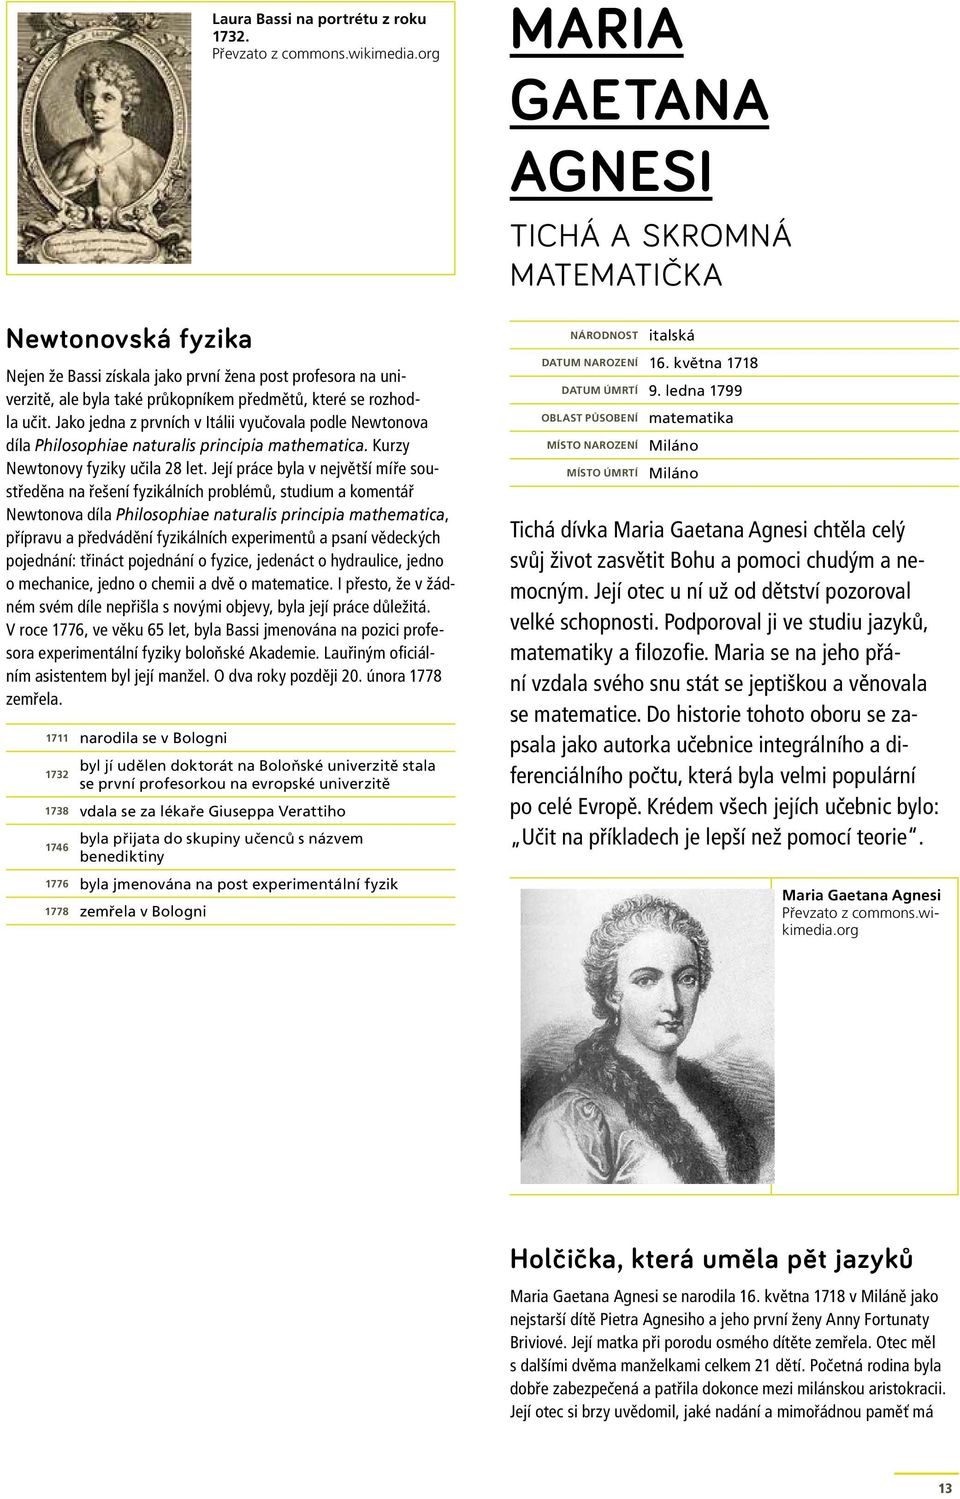 Její práce byla v největší míře soustředěna na řešení fyzikálních problémů, studium a komentář Newtonova díla Philosophiae naturalis principia mathematica, přípravu a předvádění fyzikálních